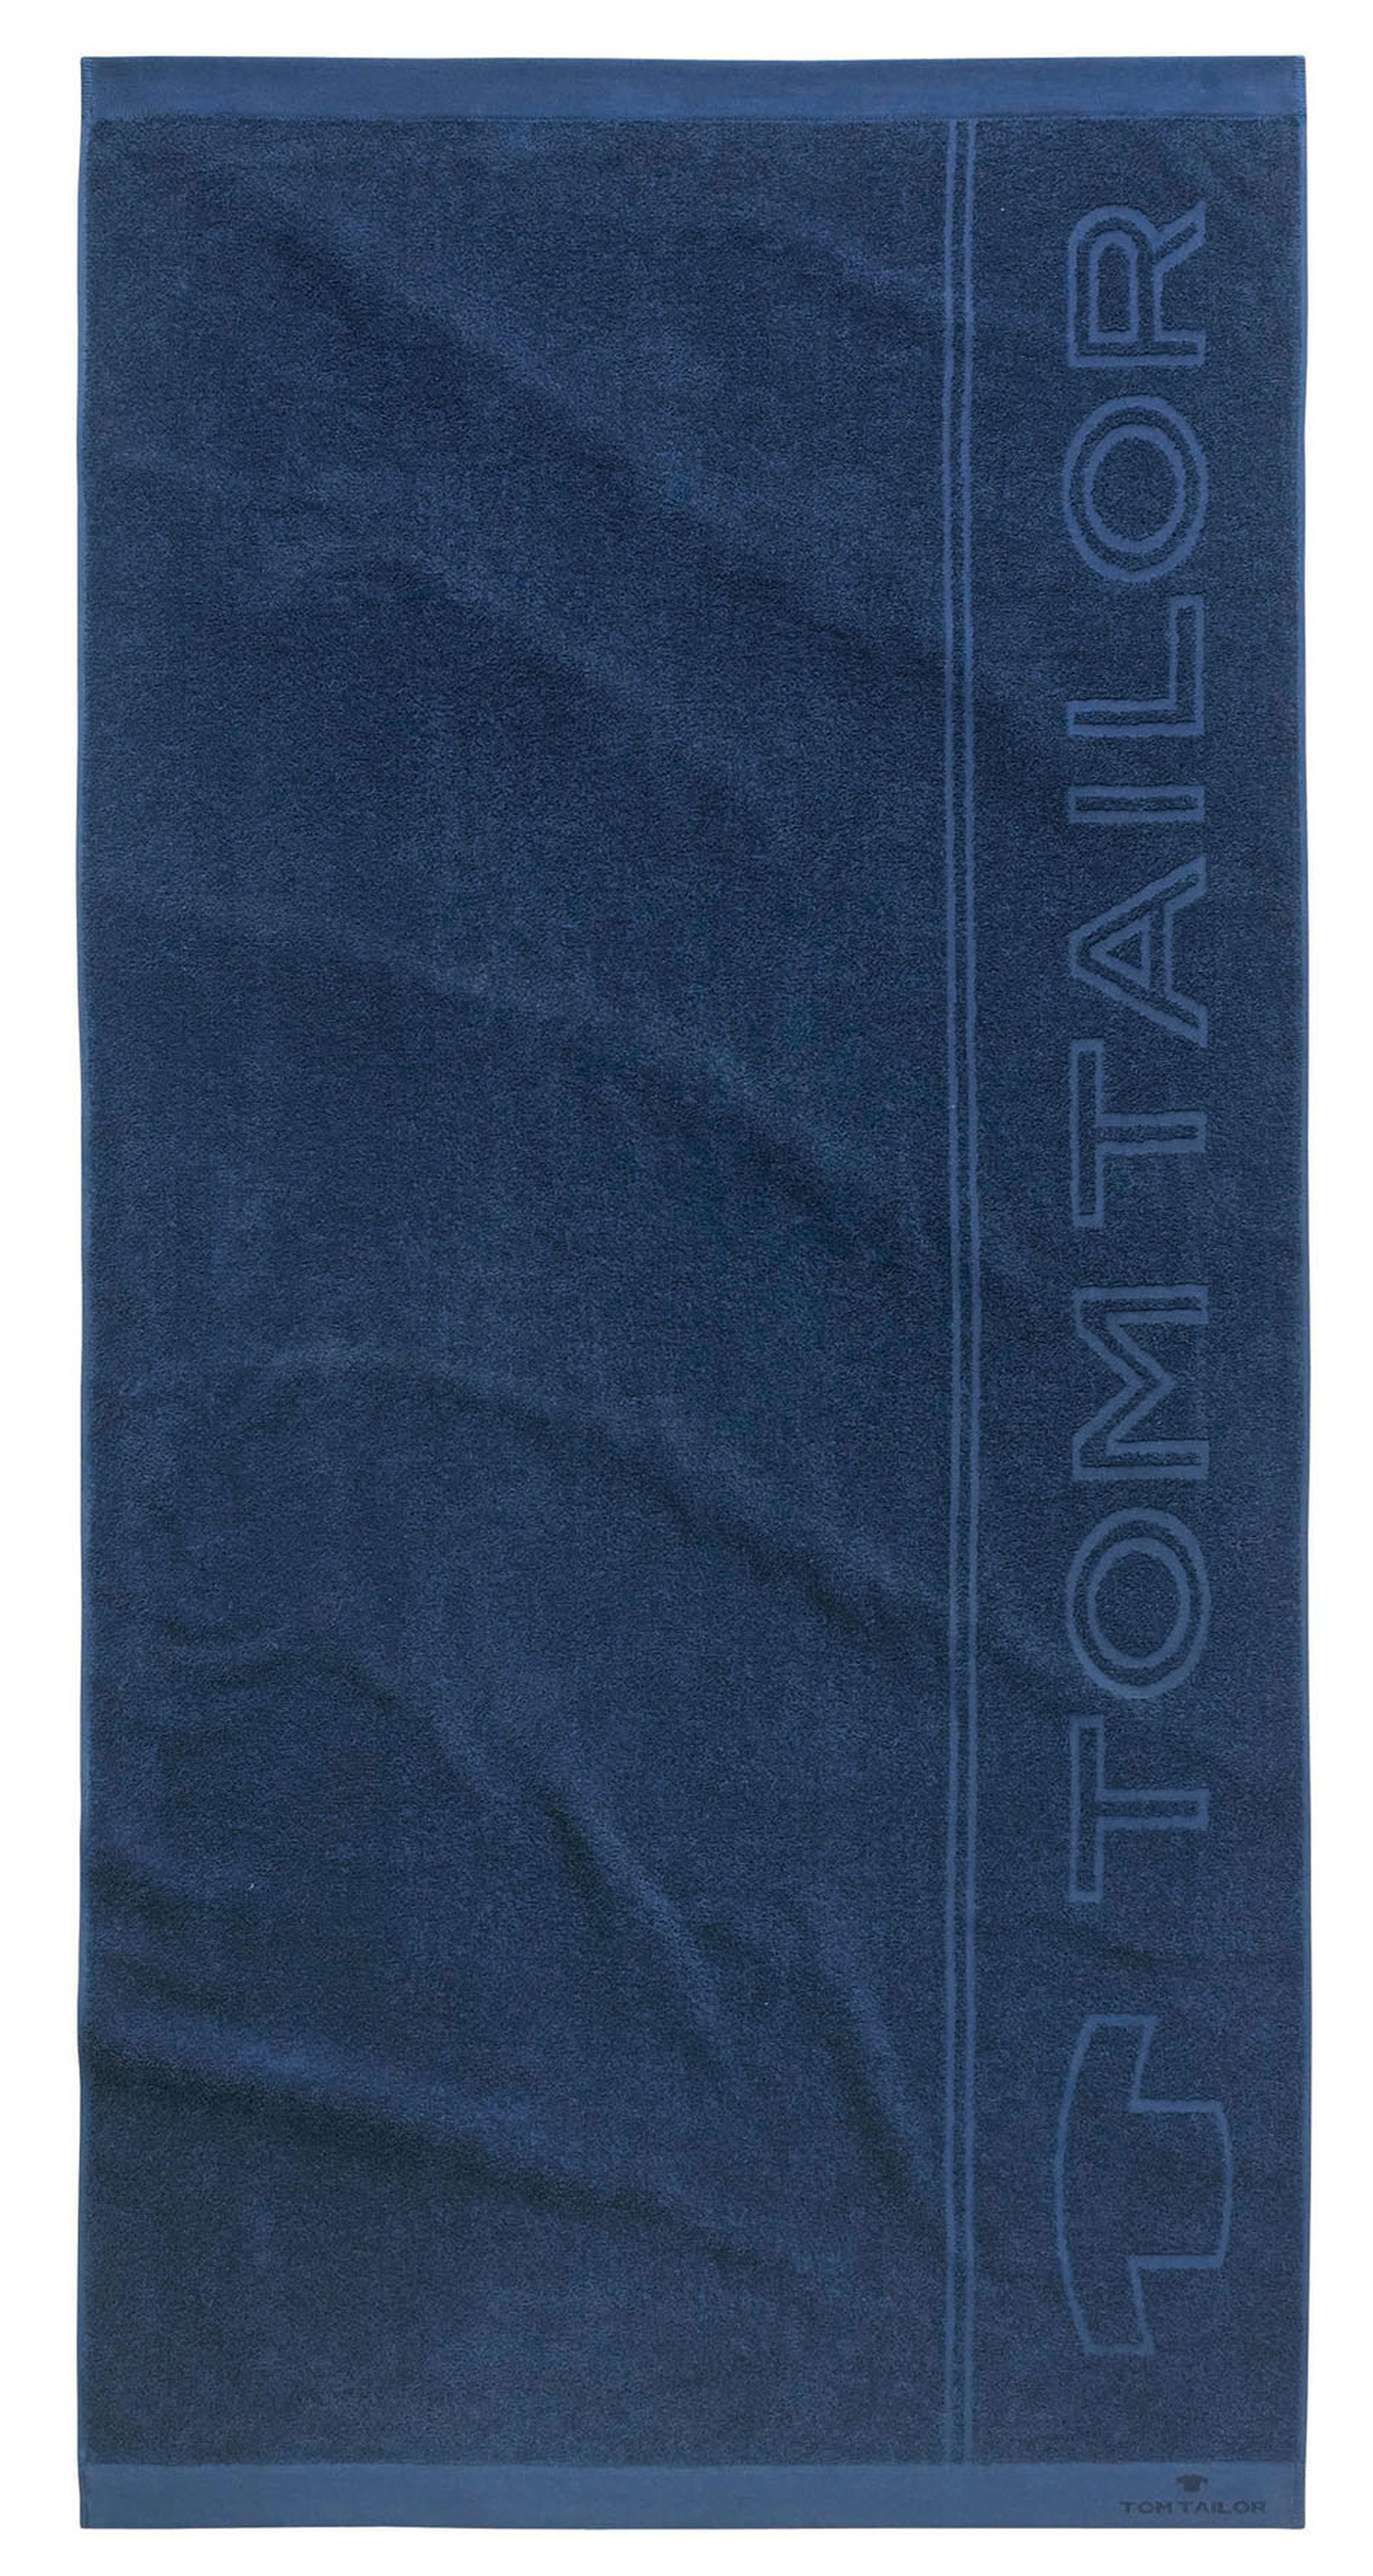 STRANDTUCH 100119 90X180 90/180 cm  - Dunkelblau, KONVENTIONELL, Textil (90/180cm) - Tom Tailor